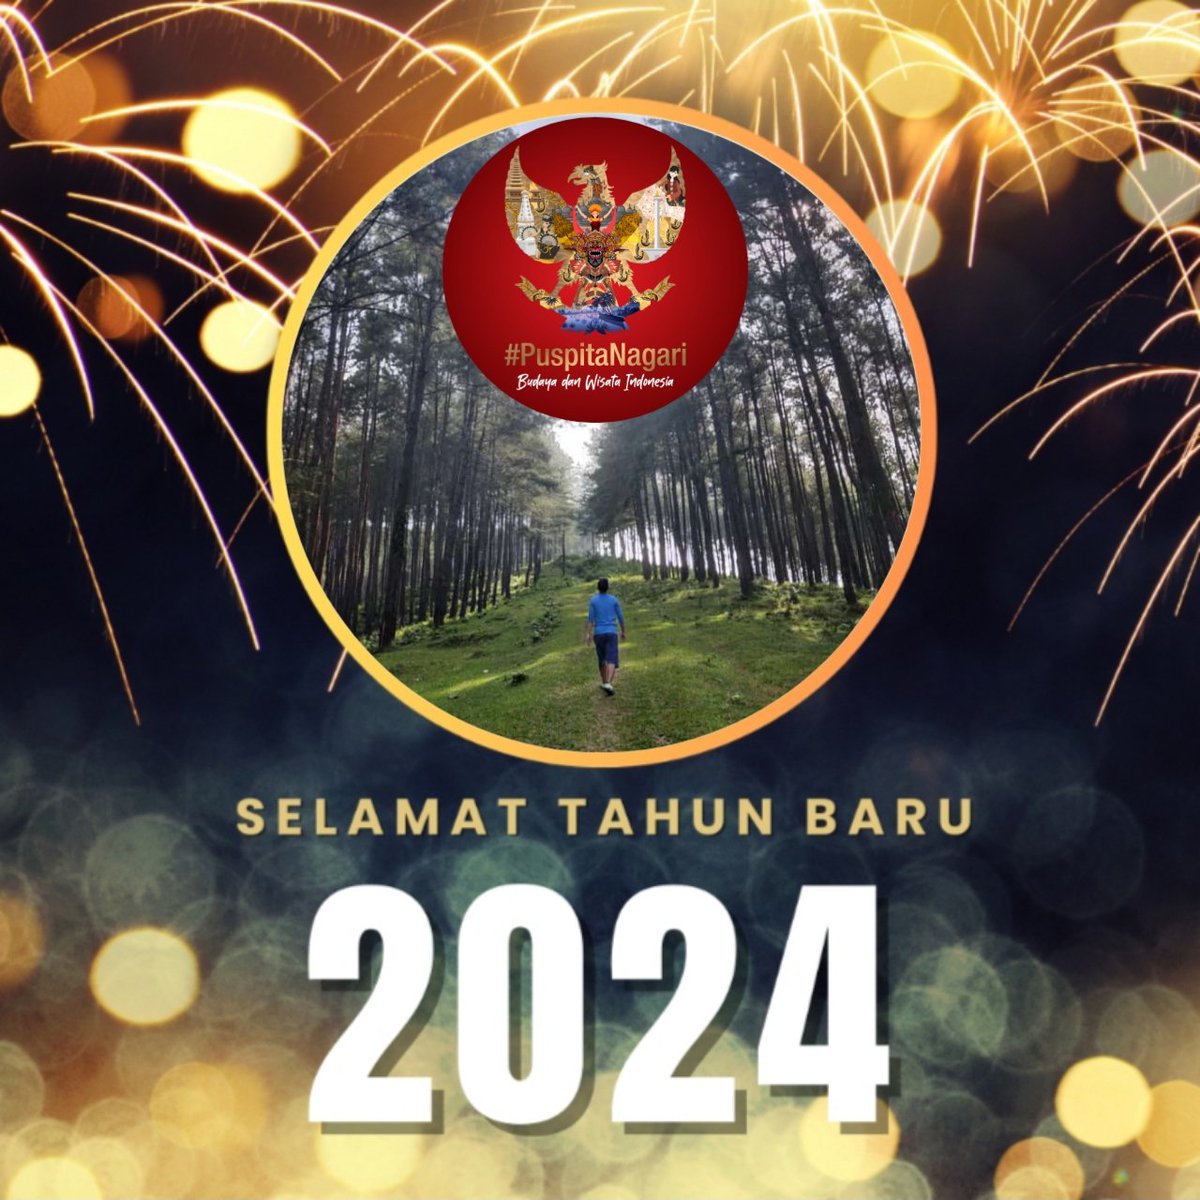 Selamat Tahun Baru 2024...🧜🏼‍♂️ Jagalah persatuan dan kesatuan!!! 🇮🇩🔱 #PuspitaNagari #programfolback